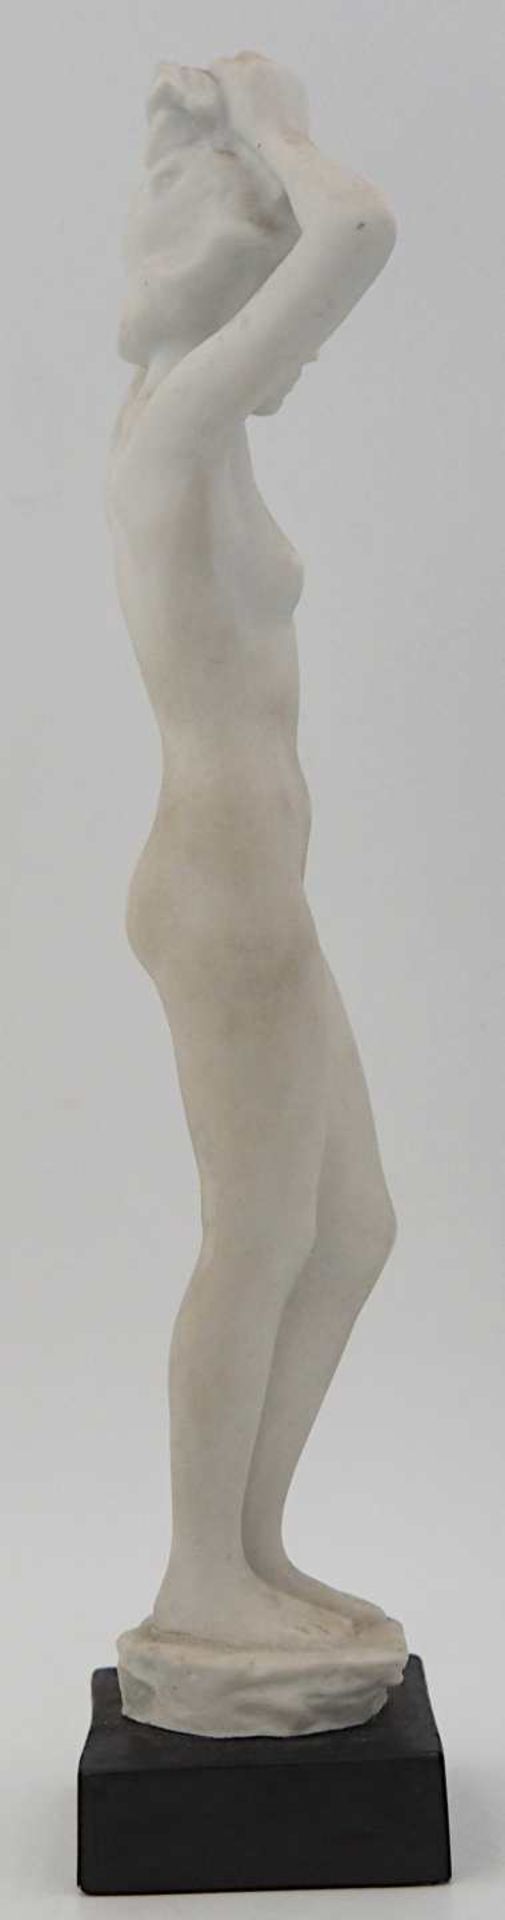 1 Figur Biskuitporzellan ROSENTHAL "Weiblicher Akt", Entwurf R. M. WERNER,wohl 1930er - Bild 3 aus 5